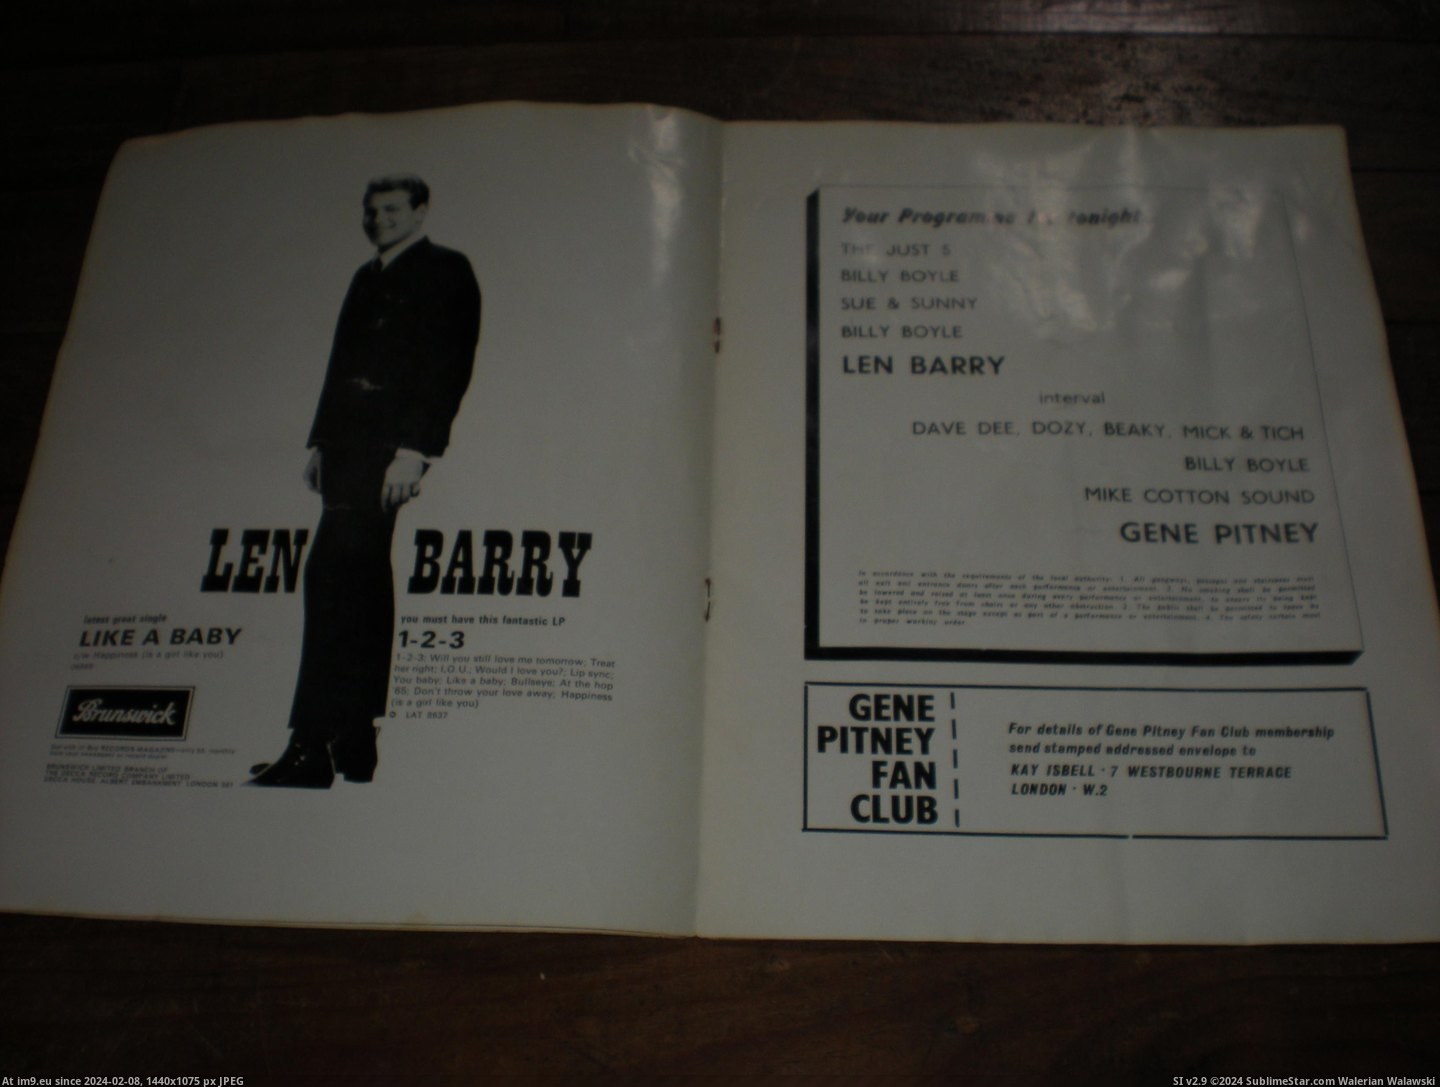 #Gene #Pitney #Prog Gene Pitney prog 4 Pic. (Image of album new 1))